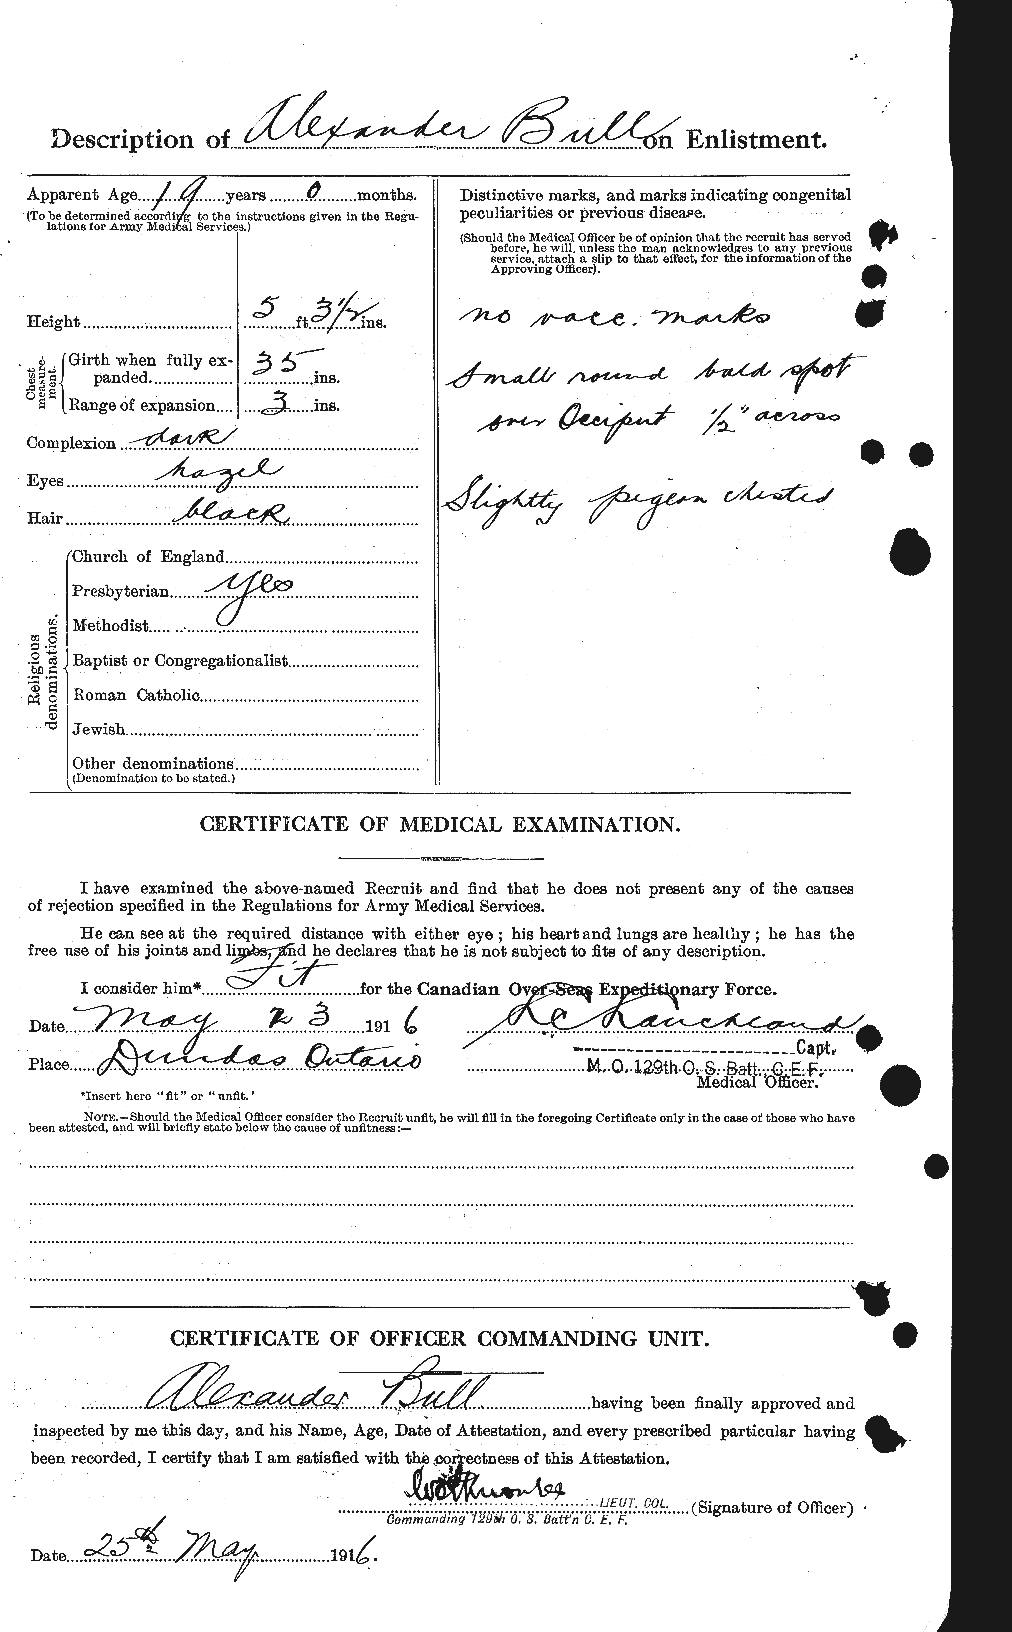 Dossiers du Personnel de la Première Guerre mondiale - CEC 270653b